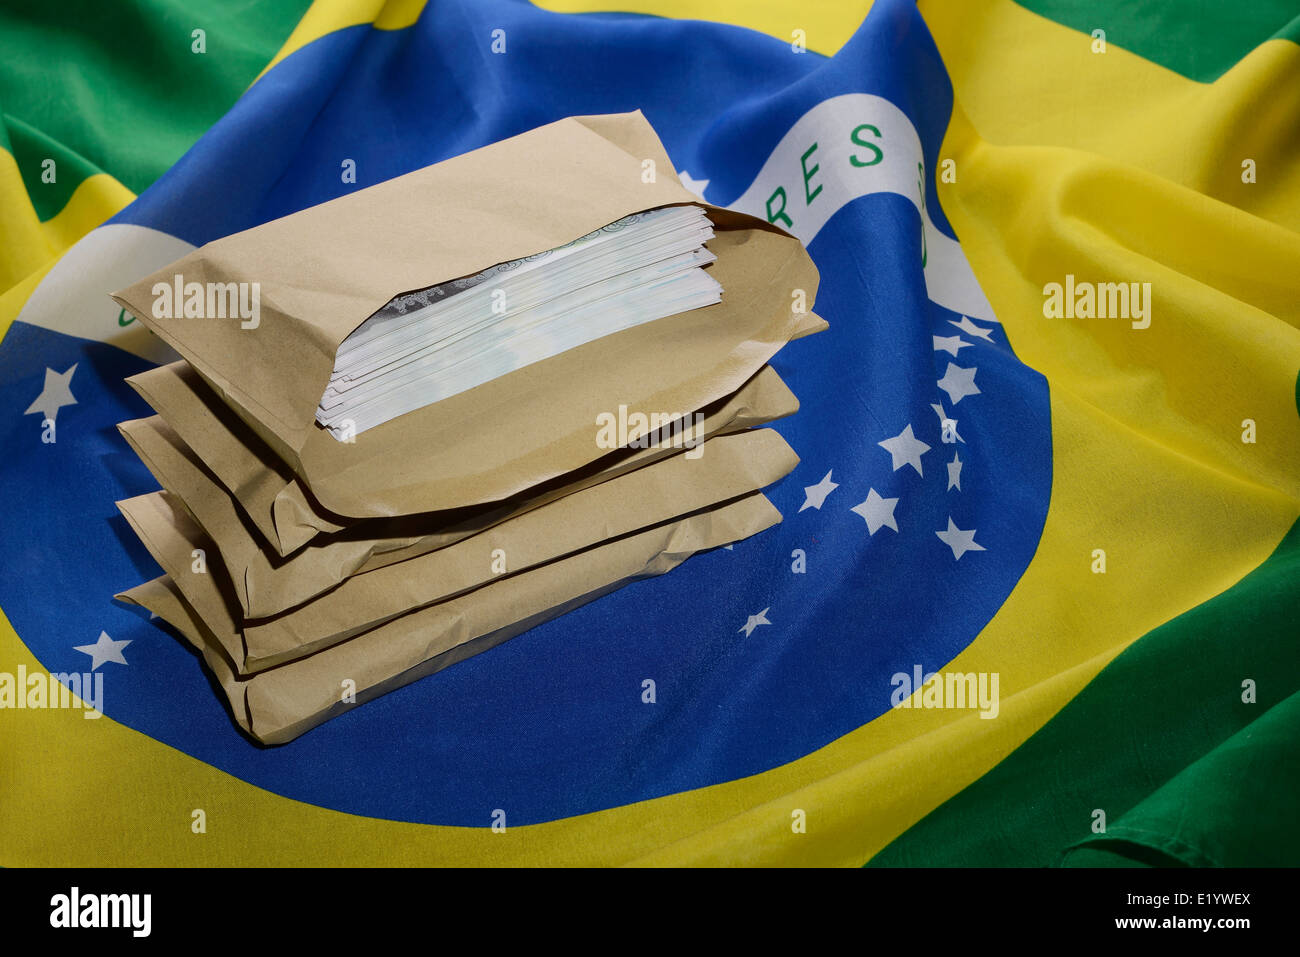 Brazil flag with brown envelopes full of money Stock Photo